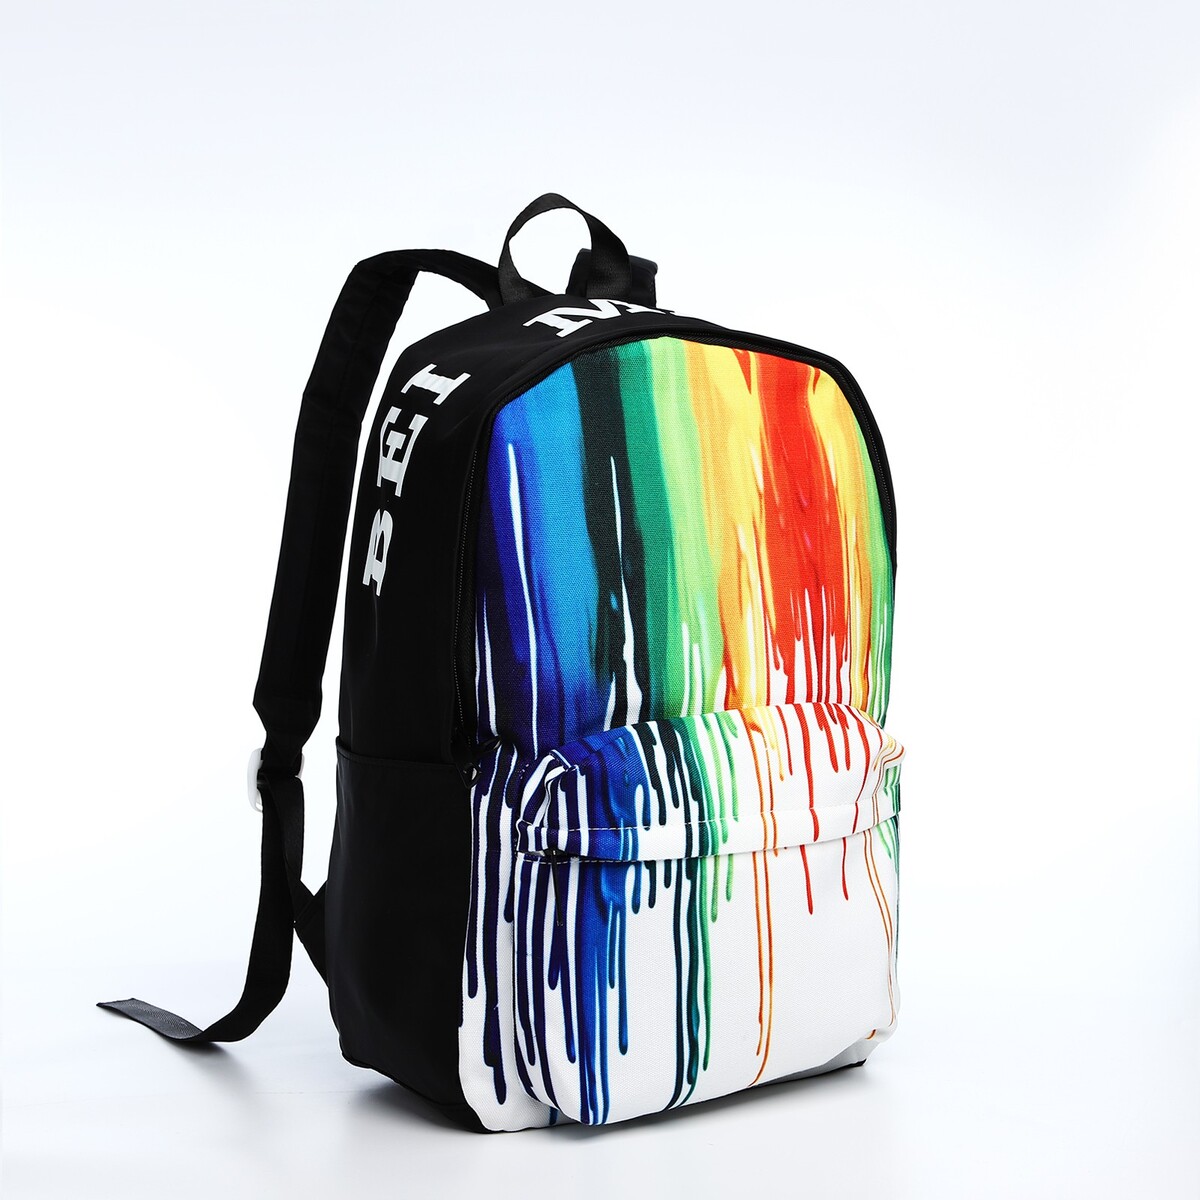 Рюкзак молодежный из текстиля, 4 кармана, цвет черный/разноцветный